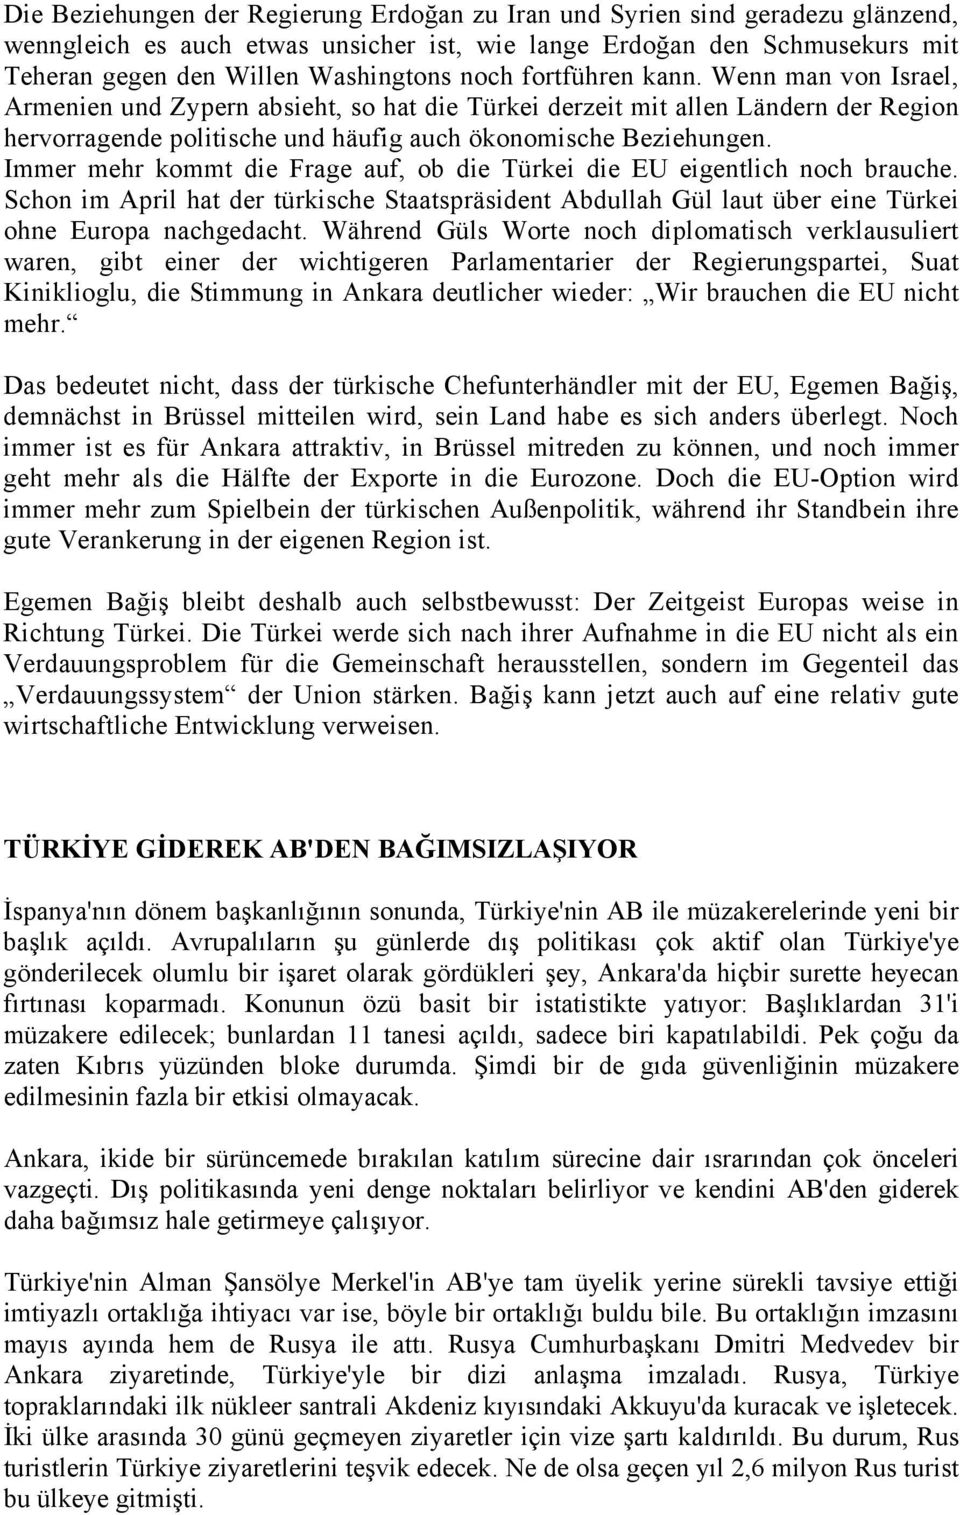 Immer mehr kommt die Frage auf, ob die Türkei die EU eigentlich noch brauche. Schon im April hat der türkische Staatspräsident Abdullah Gül laut über eine Türkei ohne Europa nachgedacht.